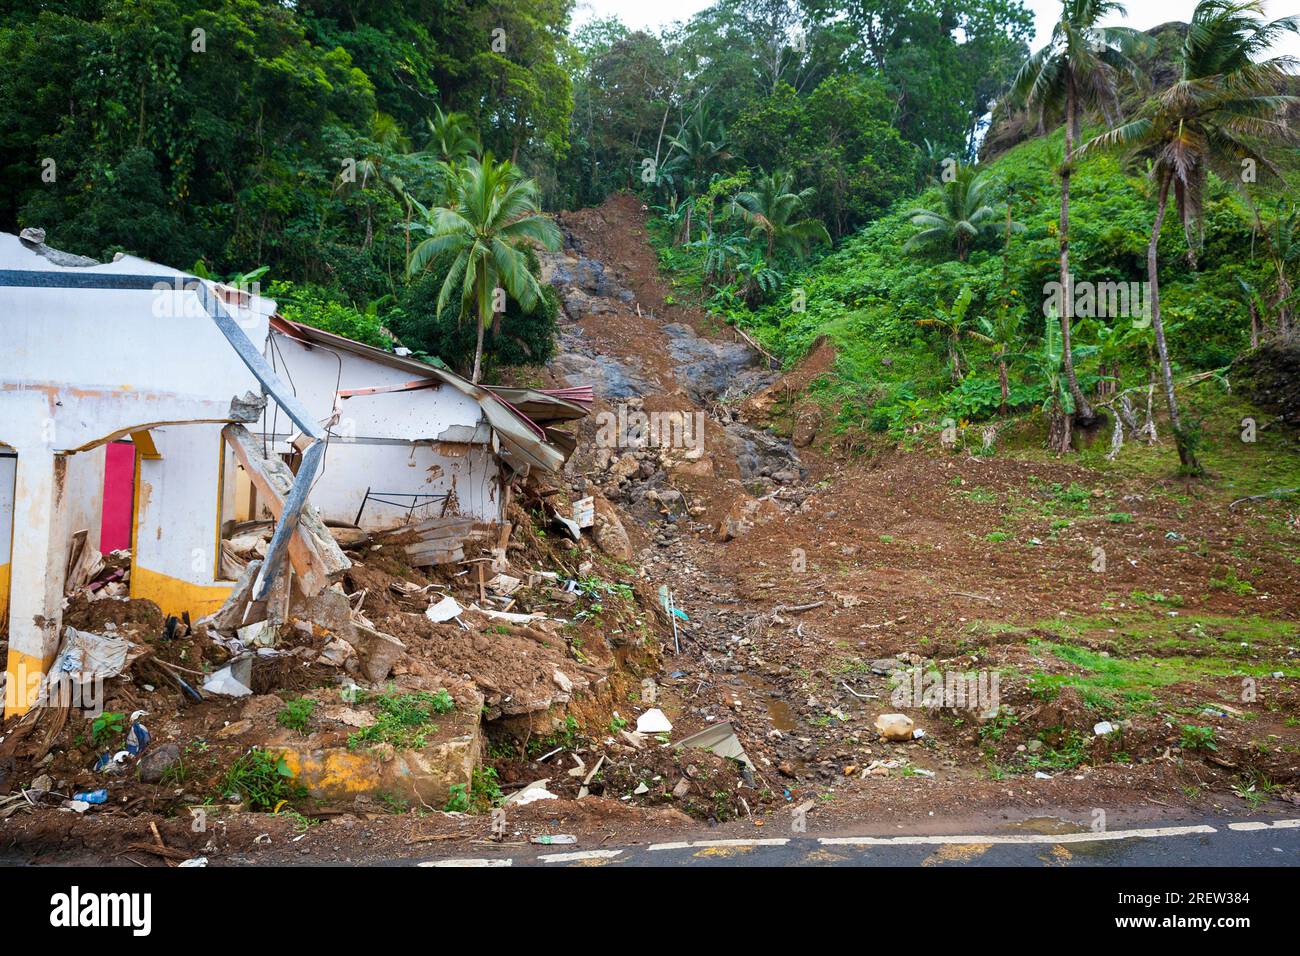 Ein Erdrutsch zerstörte mehrere Häuser in der Nähe der Festung Fuerte Santiago im Dorf Portobelo, Provinz Colon, Republik Panama, Mittelamerika. Stockfoto